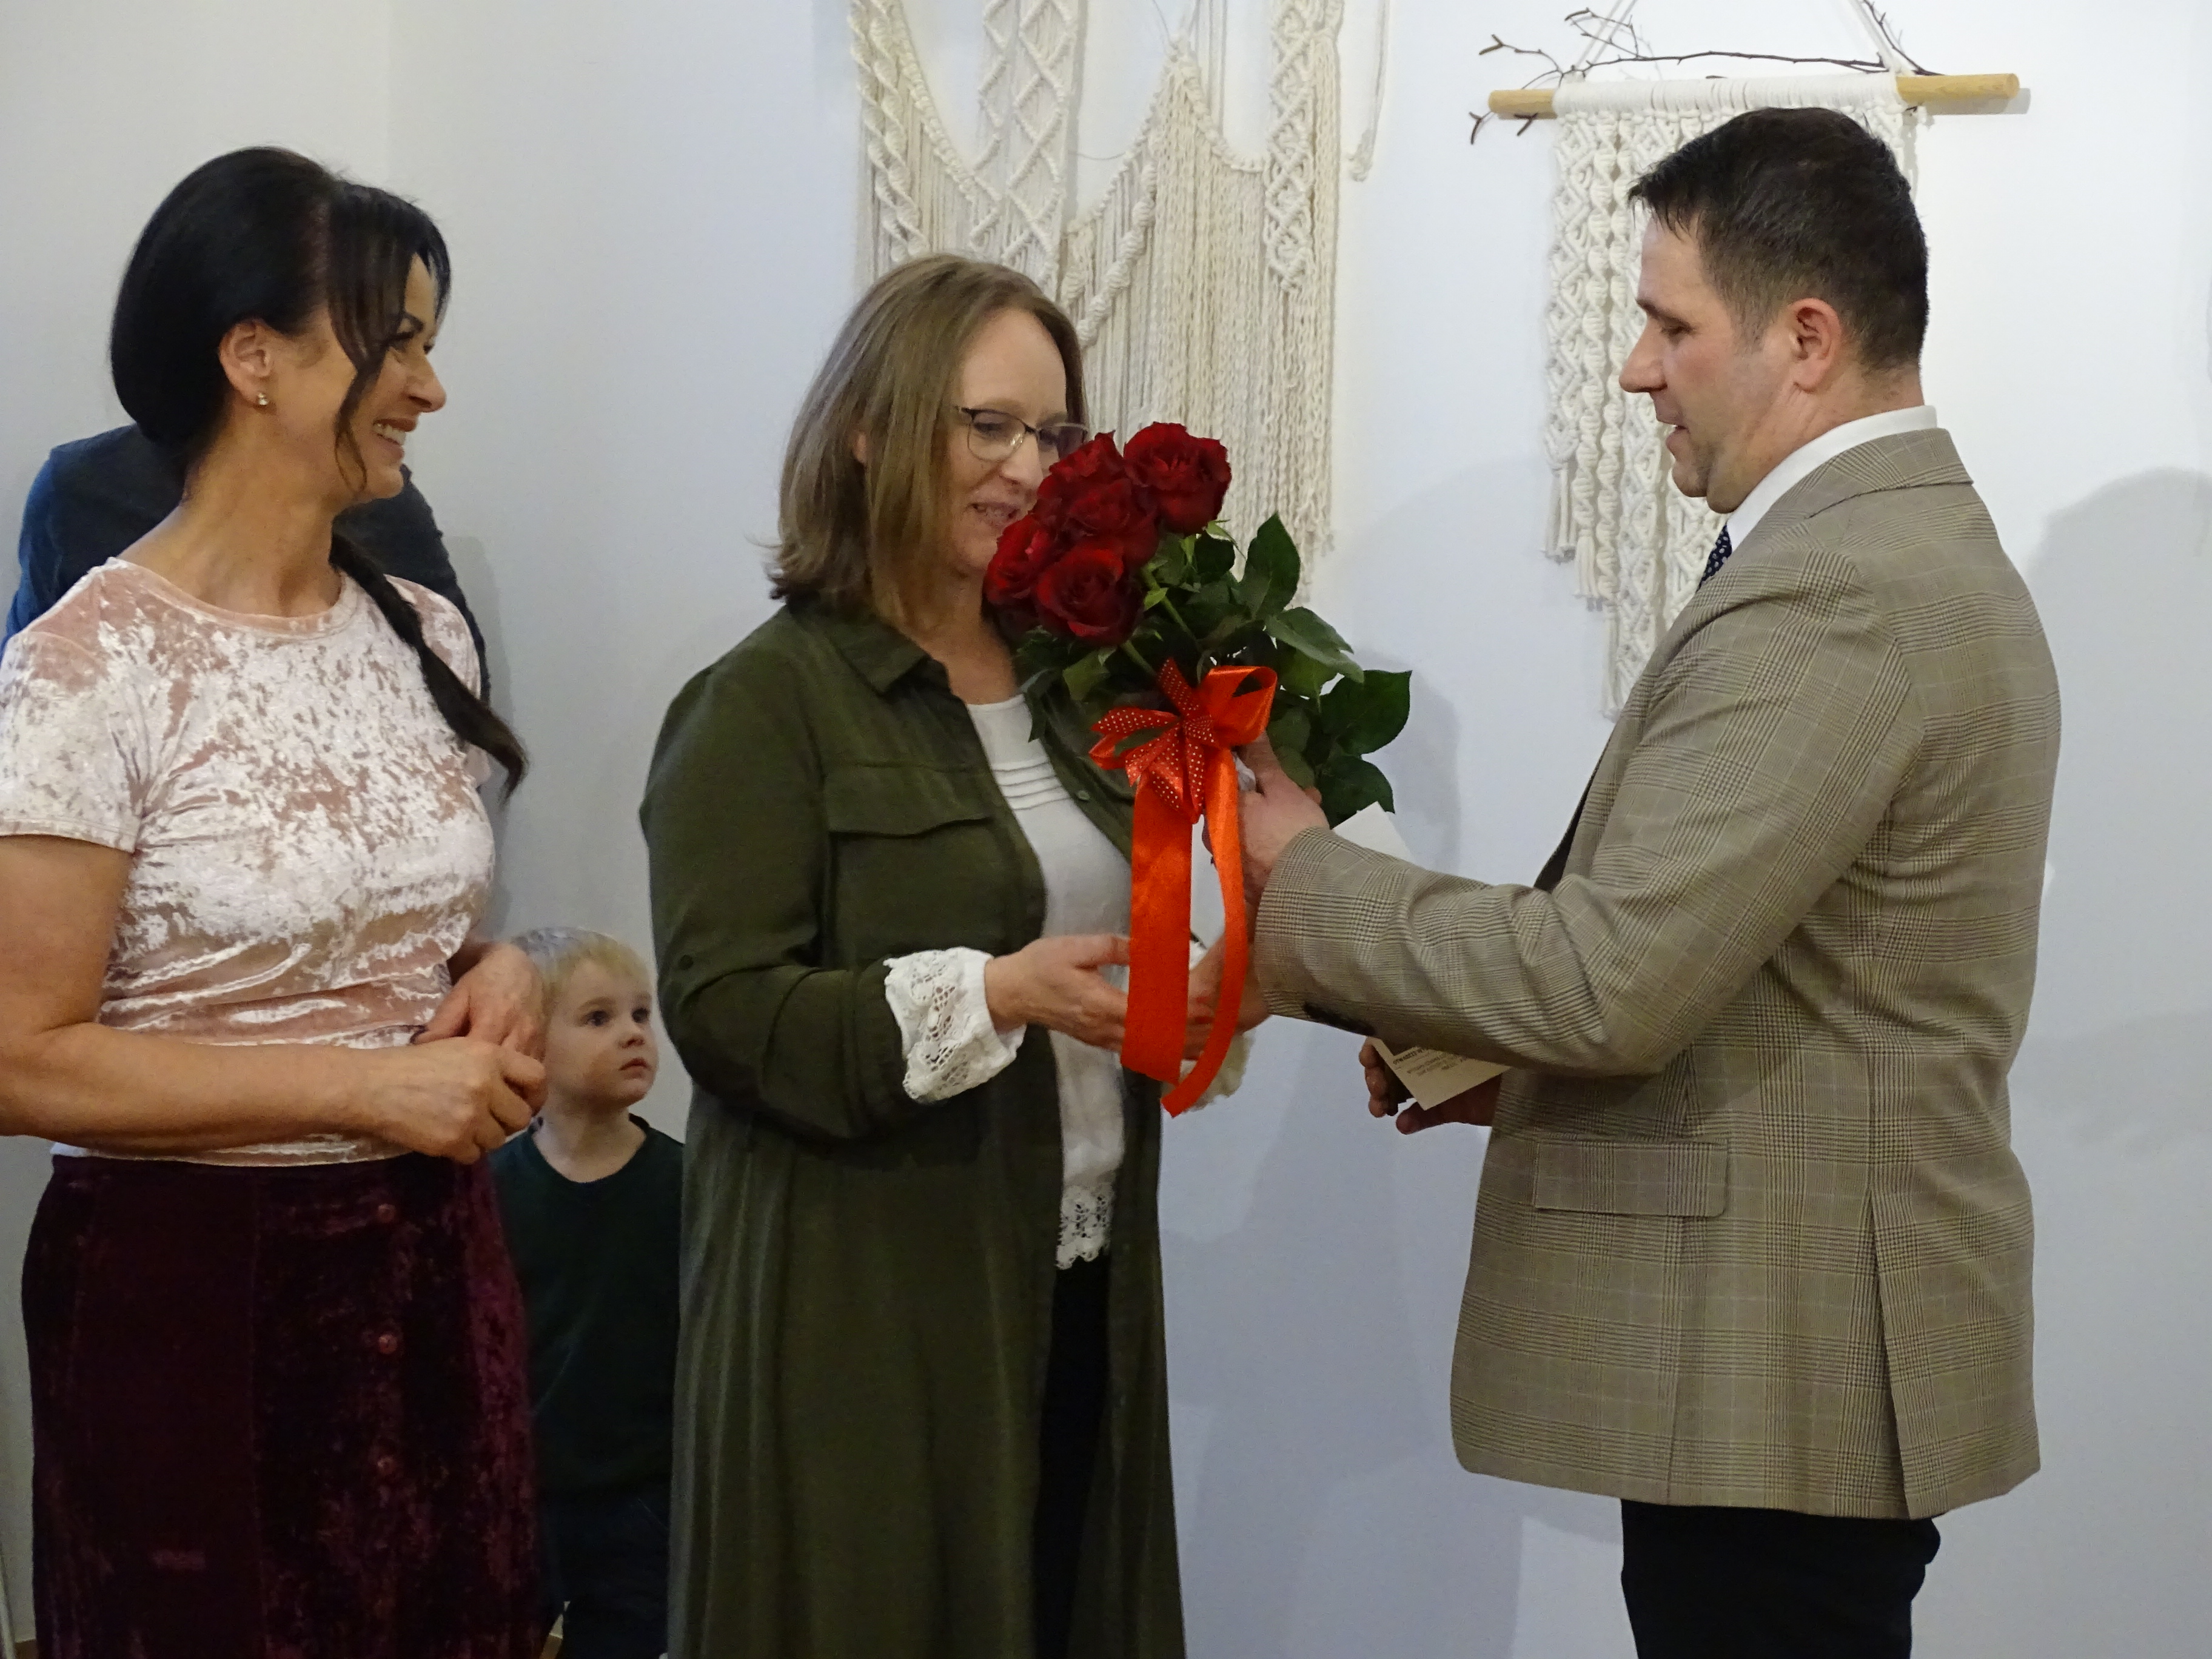 Z-ca burmistrza Grzegorz Molendowski Sylwii Cieślik wręczając bukiet róż pogratulował talentu.